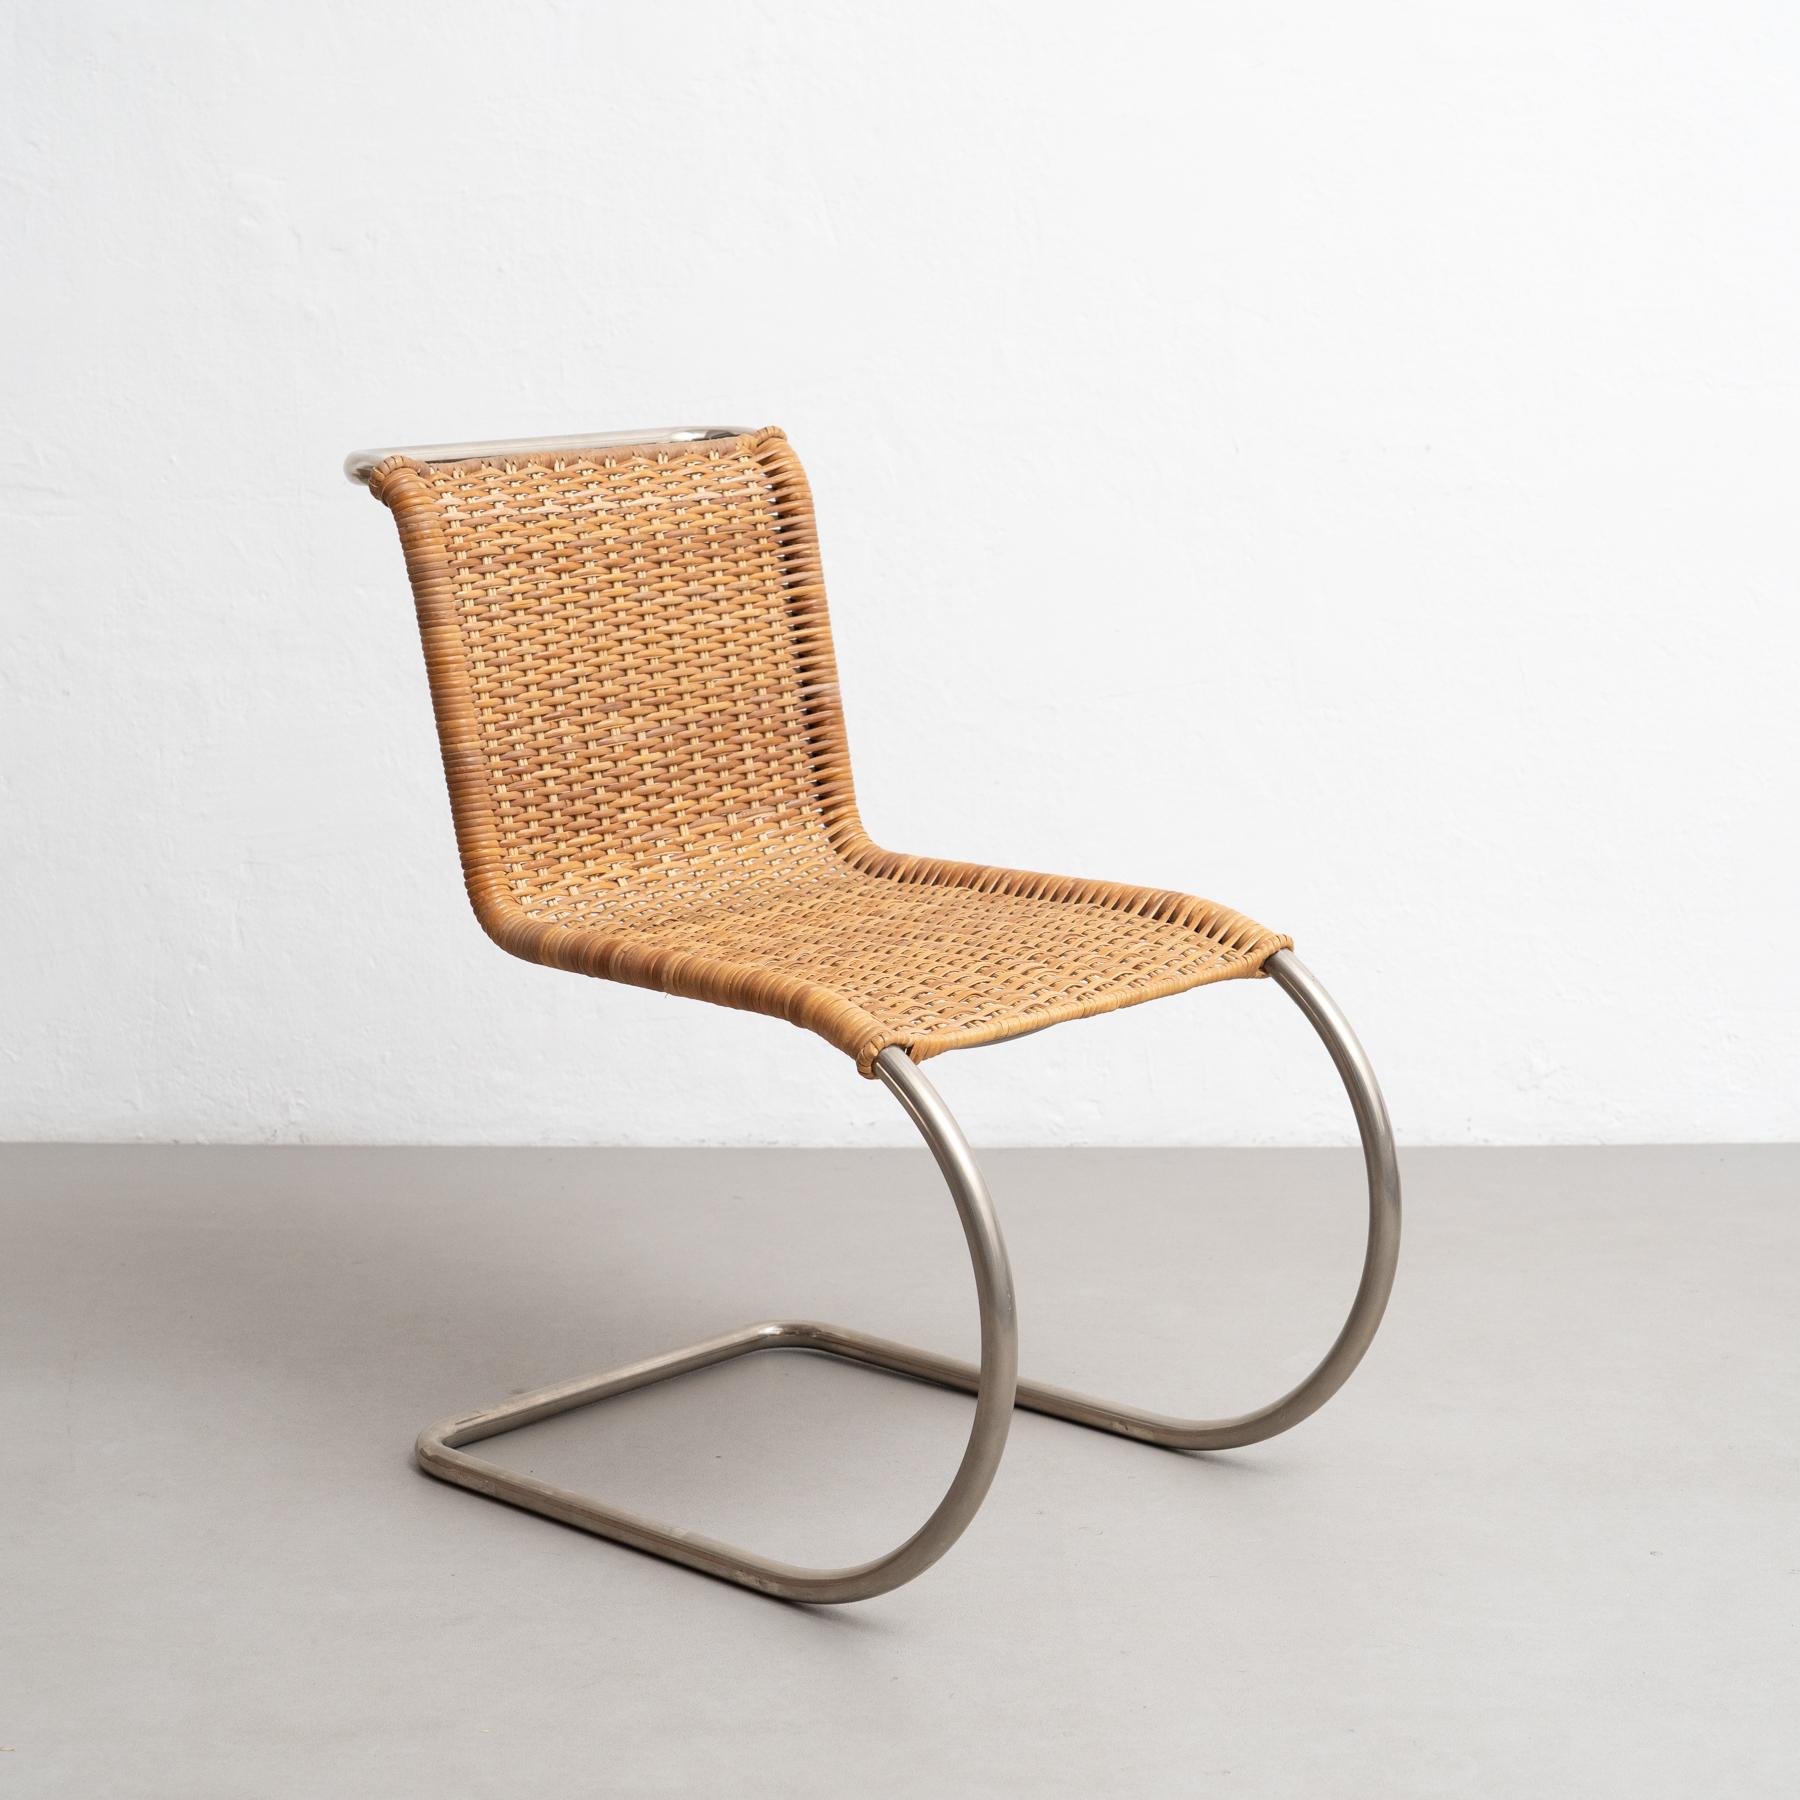 Der 1927 von Ludwig Mies van der Rohe entworfene Stuhl MR10 ist ein wahres Meisterwerk des modernen Designs. Diese um 1960 von Tecta in Deutschland hergestellten Stühle sind ein Beweis für die anhaltende Beliebtheit der innovativen und zeitlosen